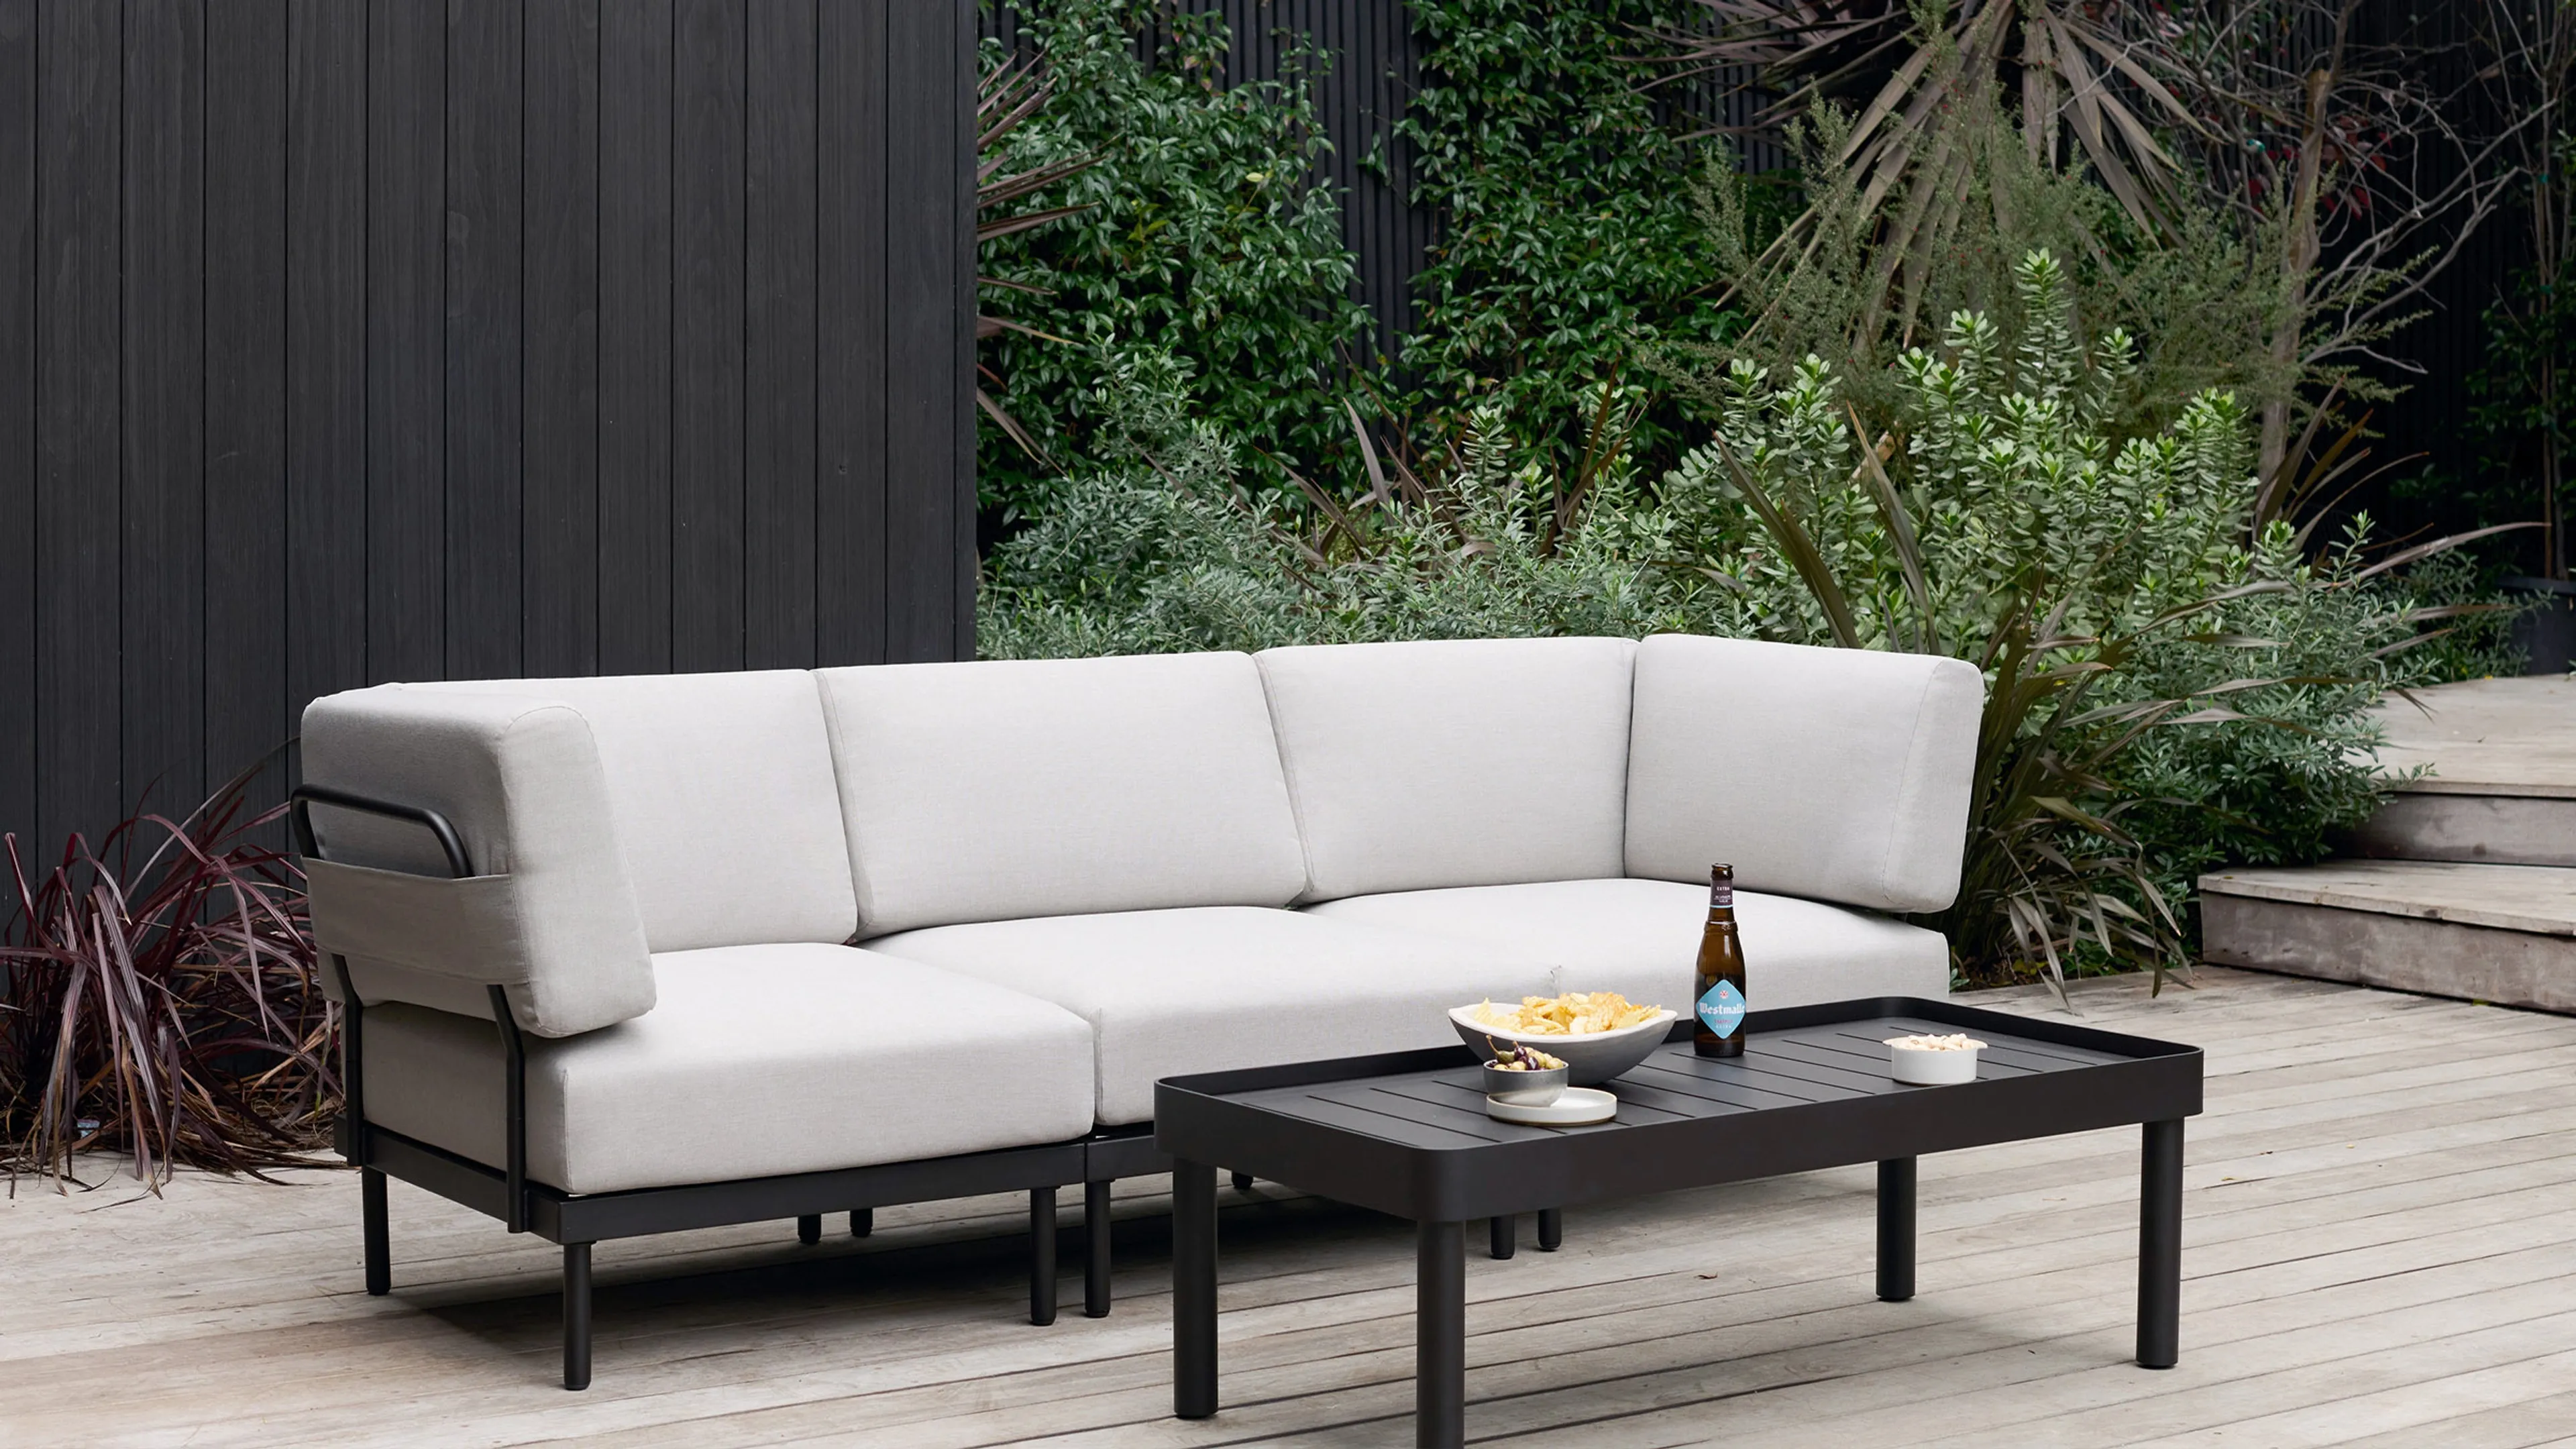 Relay Outdoor 3-Piece Armless Sofa